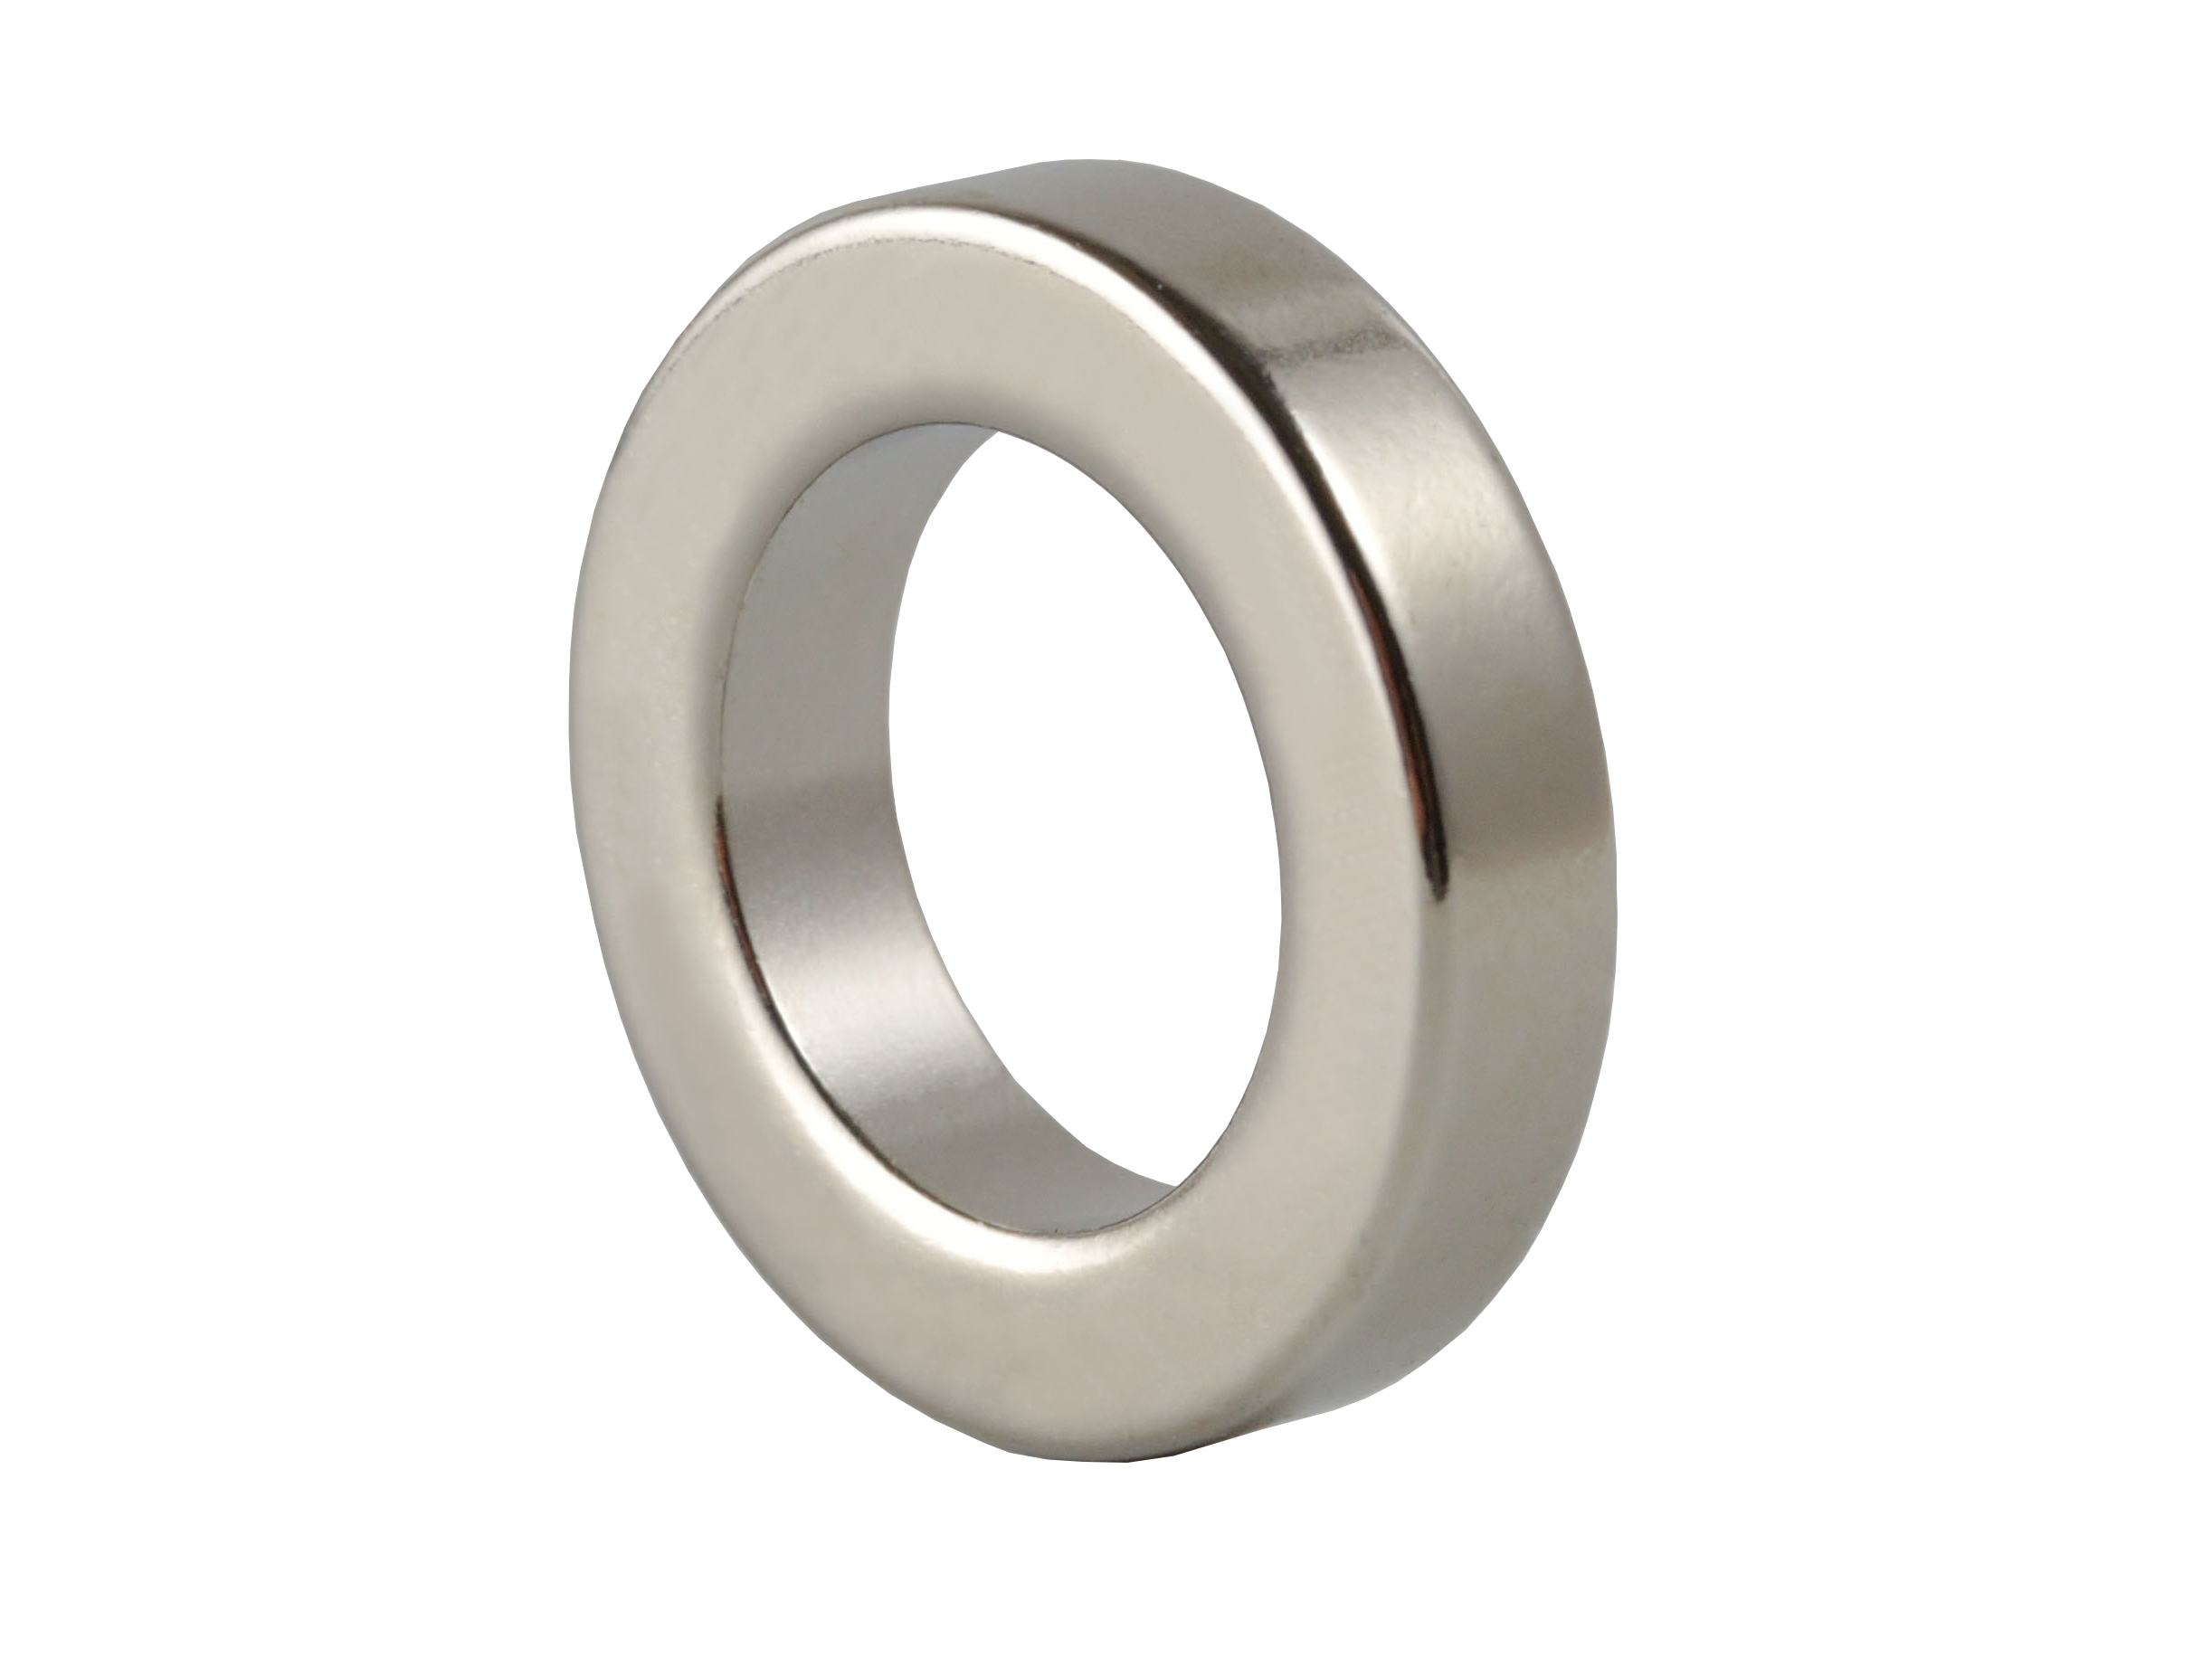 Ring‑Shaped Neodymium Magnet NOR184